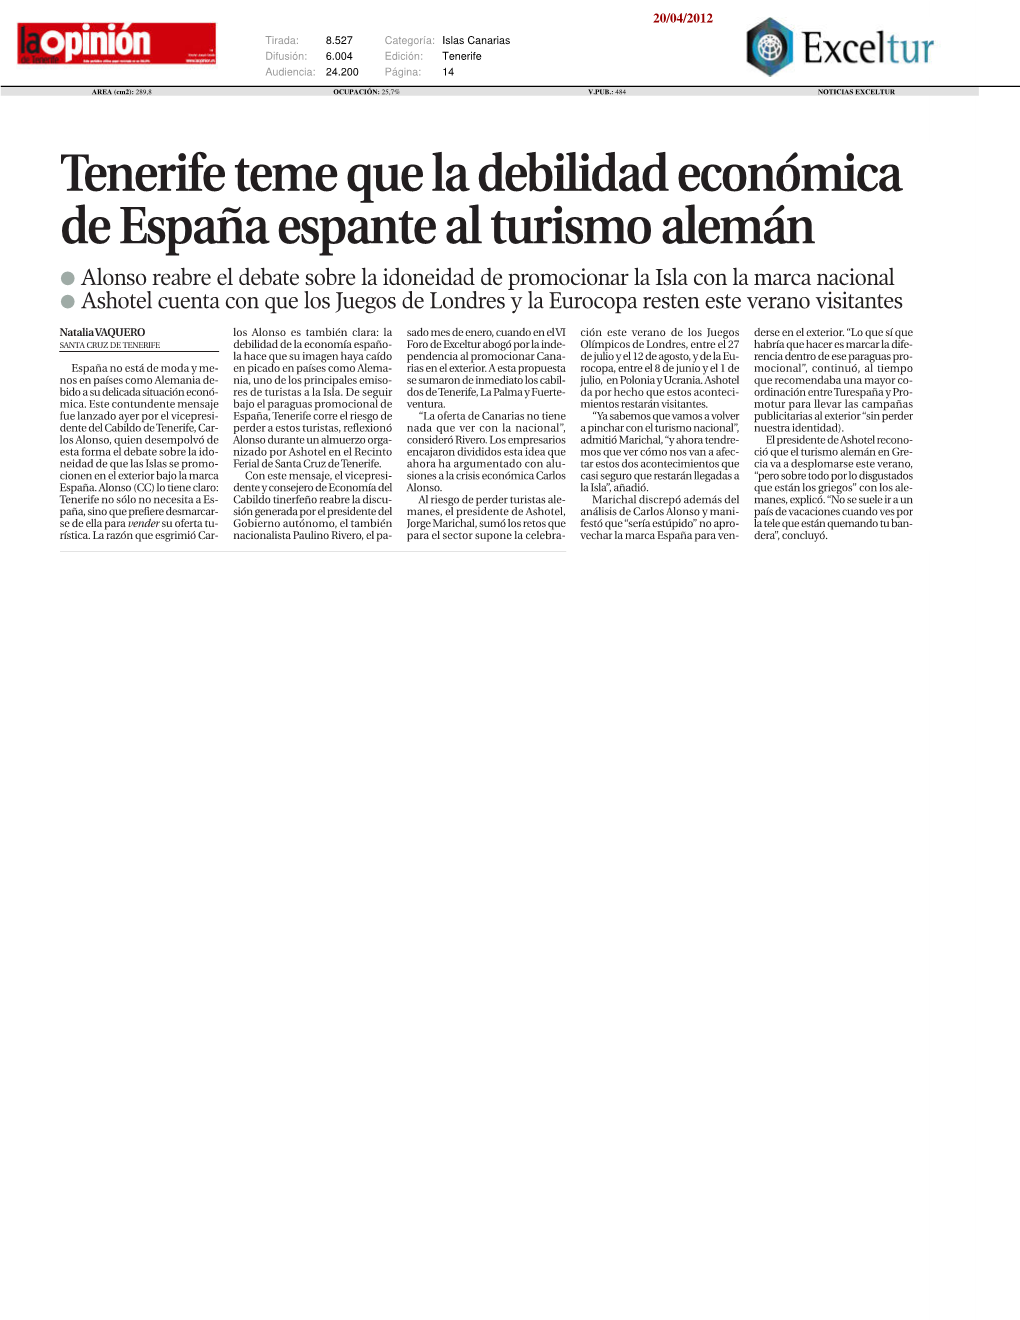 Tenerife Teme Que La Debilidad Económica De España